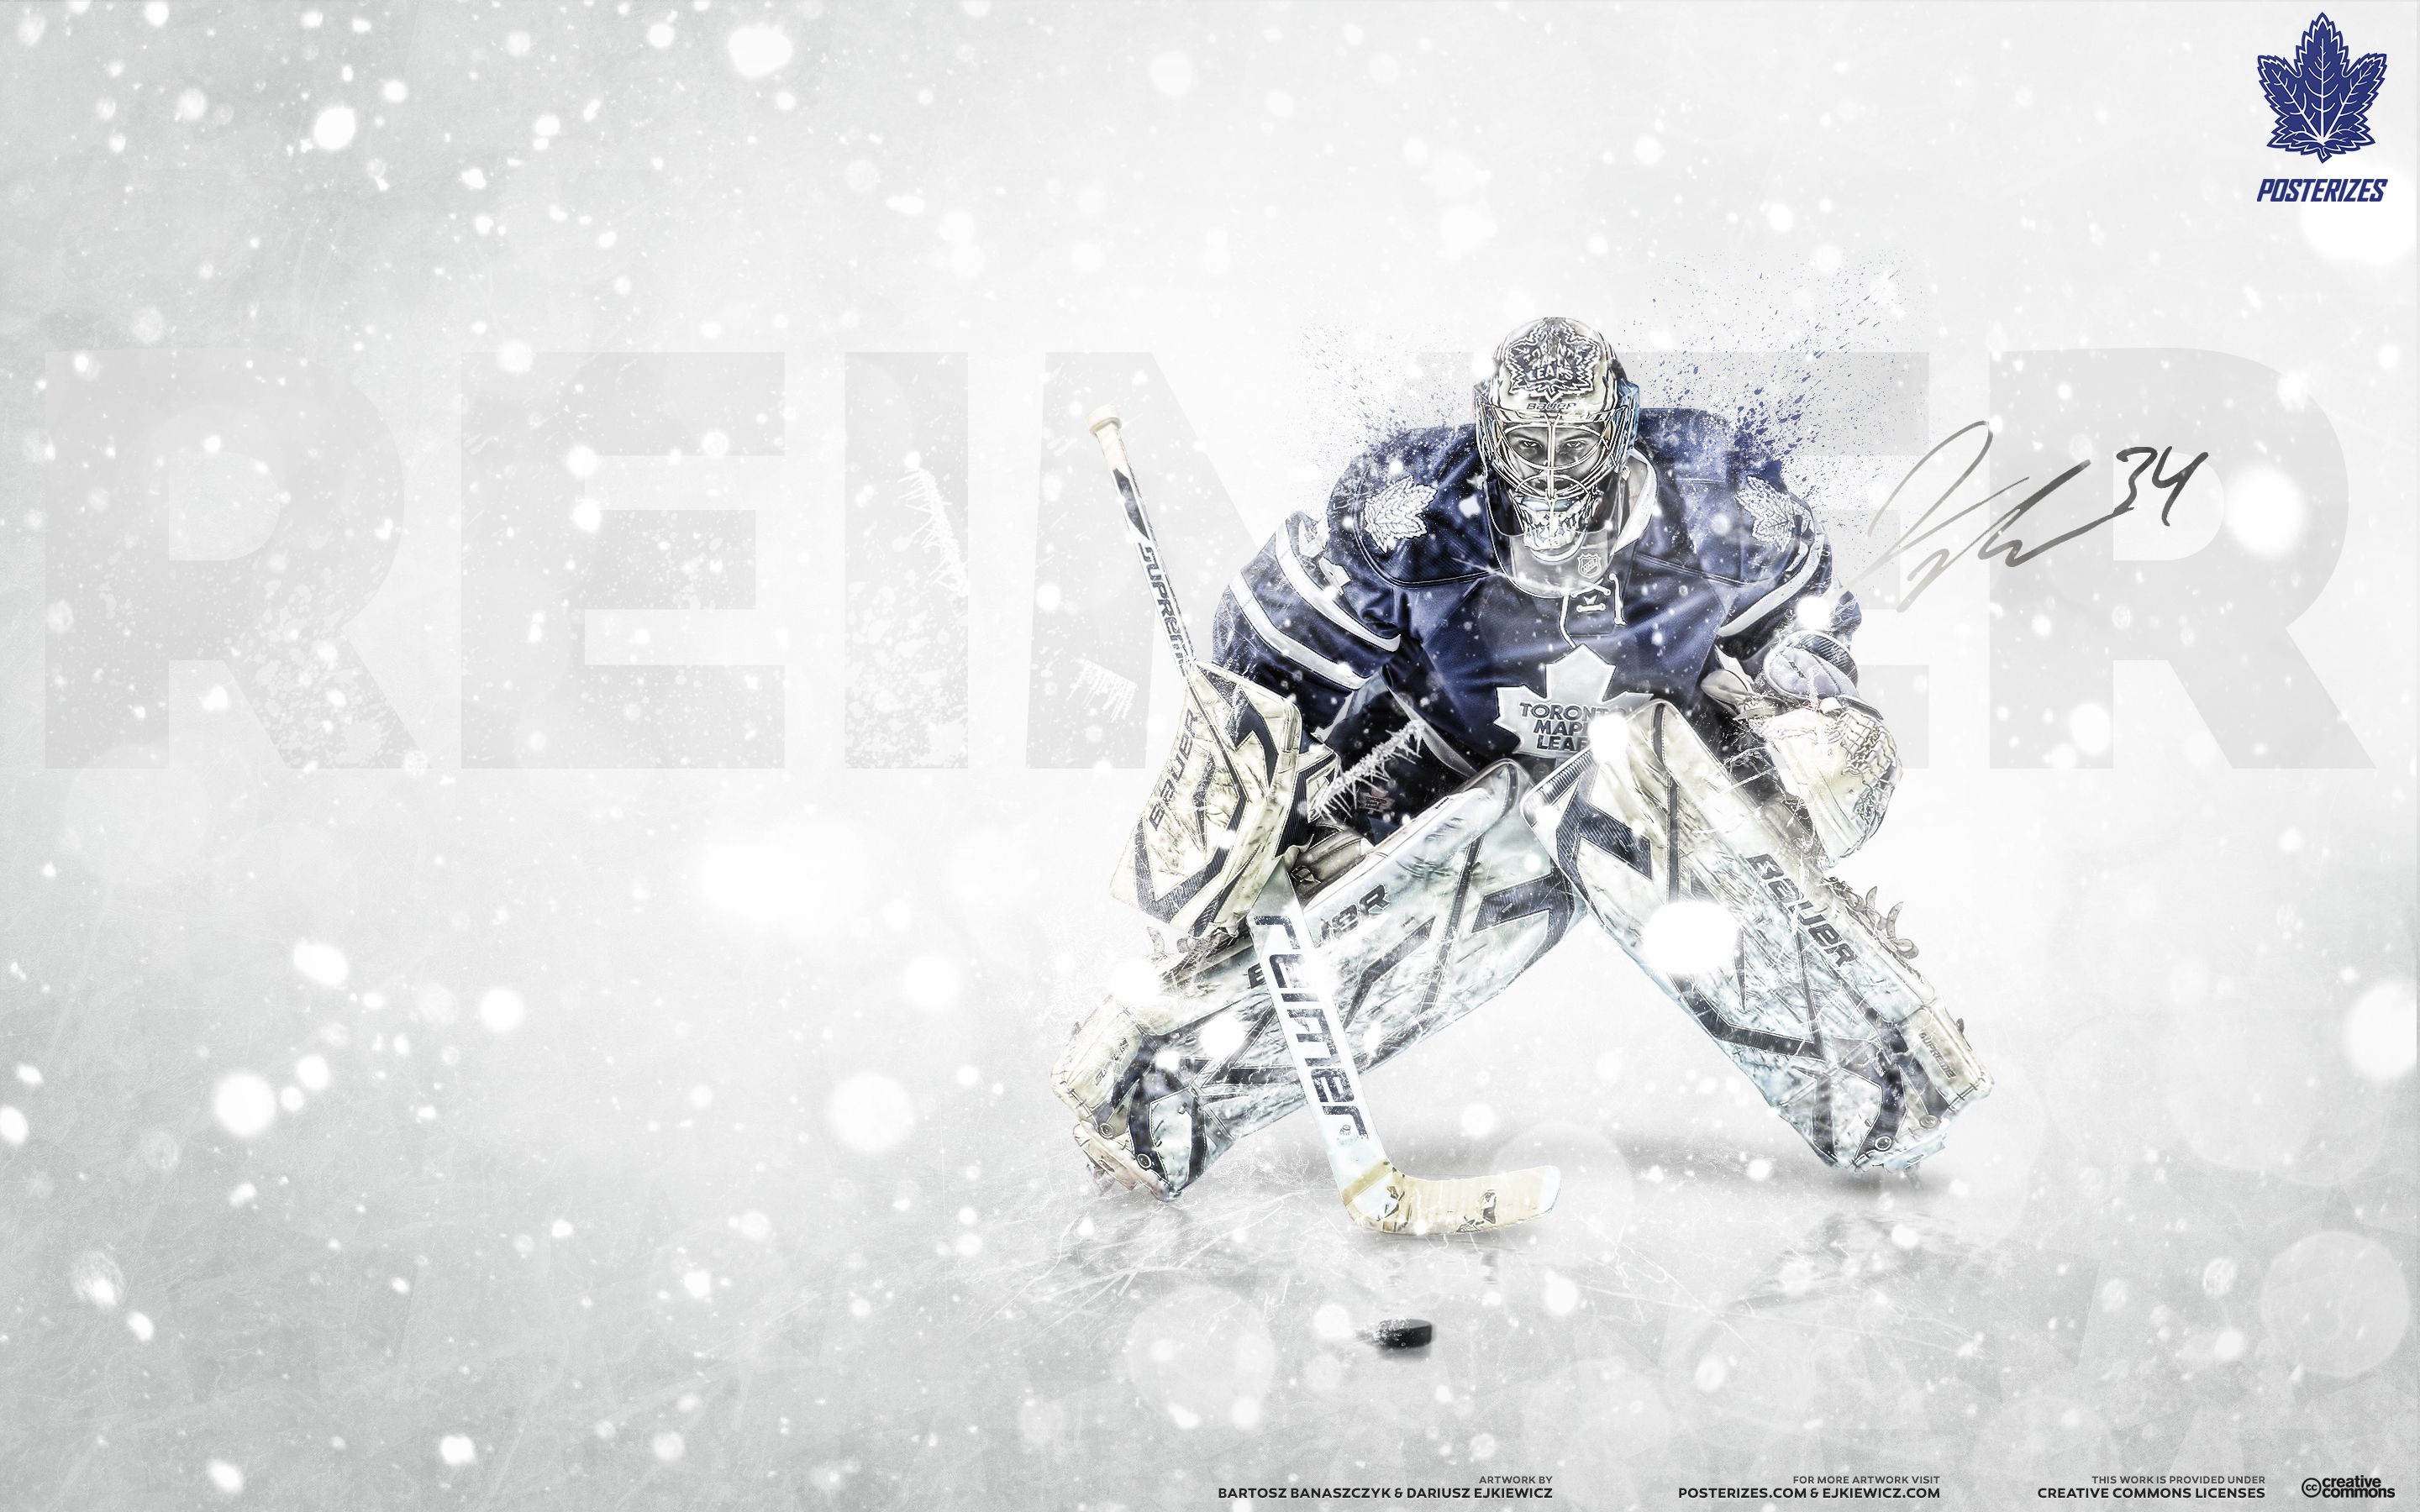 Goalie Background. NHL Goalie Wallpaper, Hockey Goalie Wallpaper and Blackhawks Goalie Mask Wallpaper